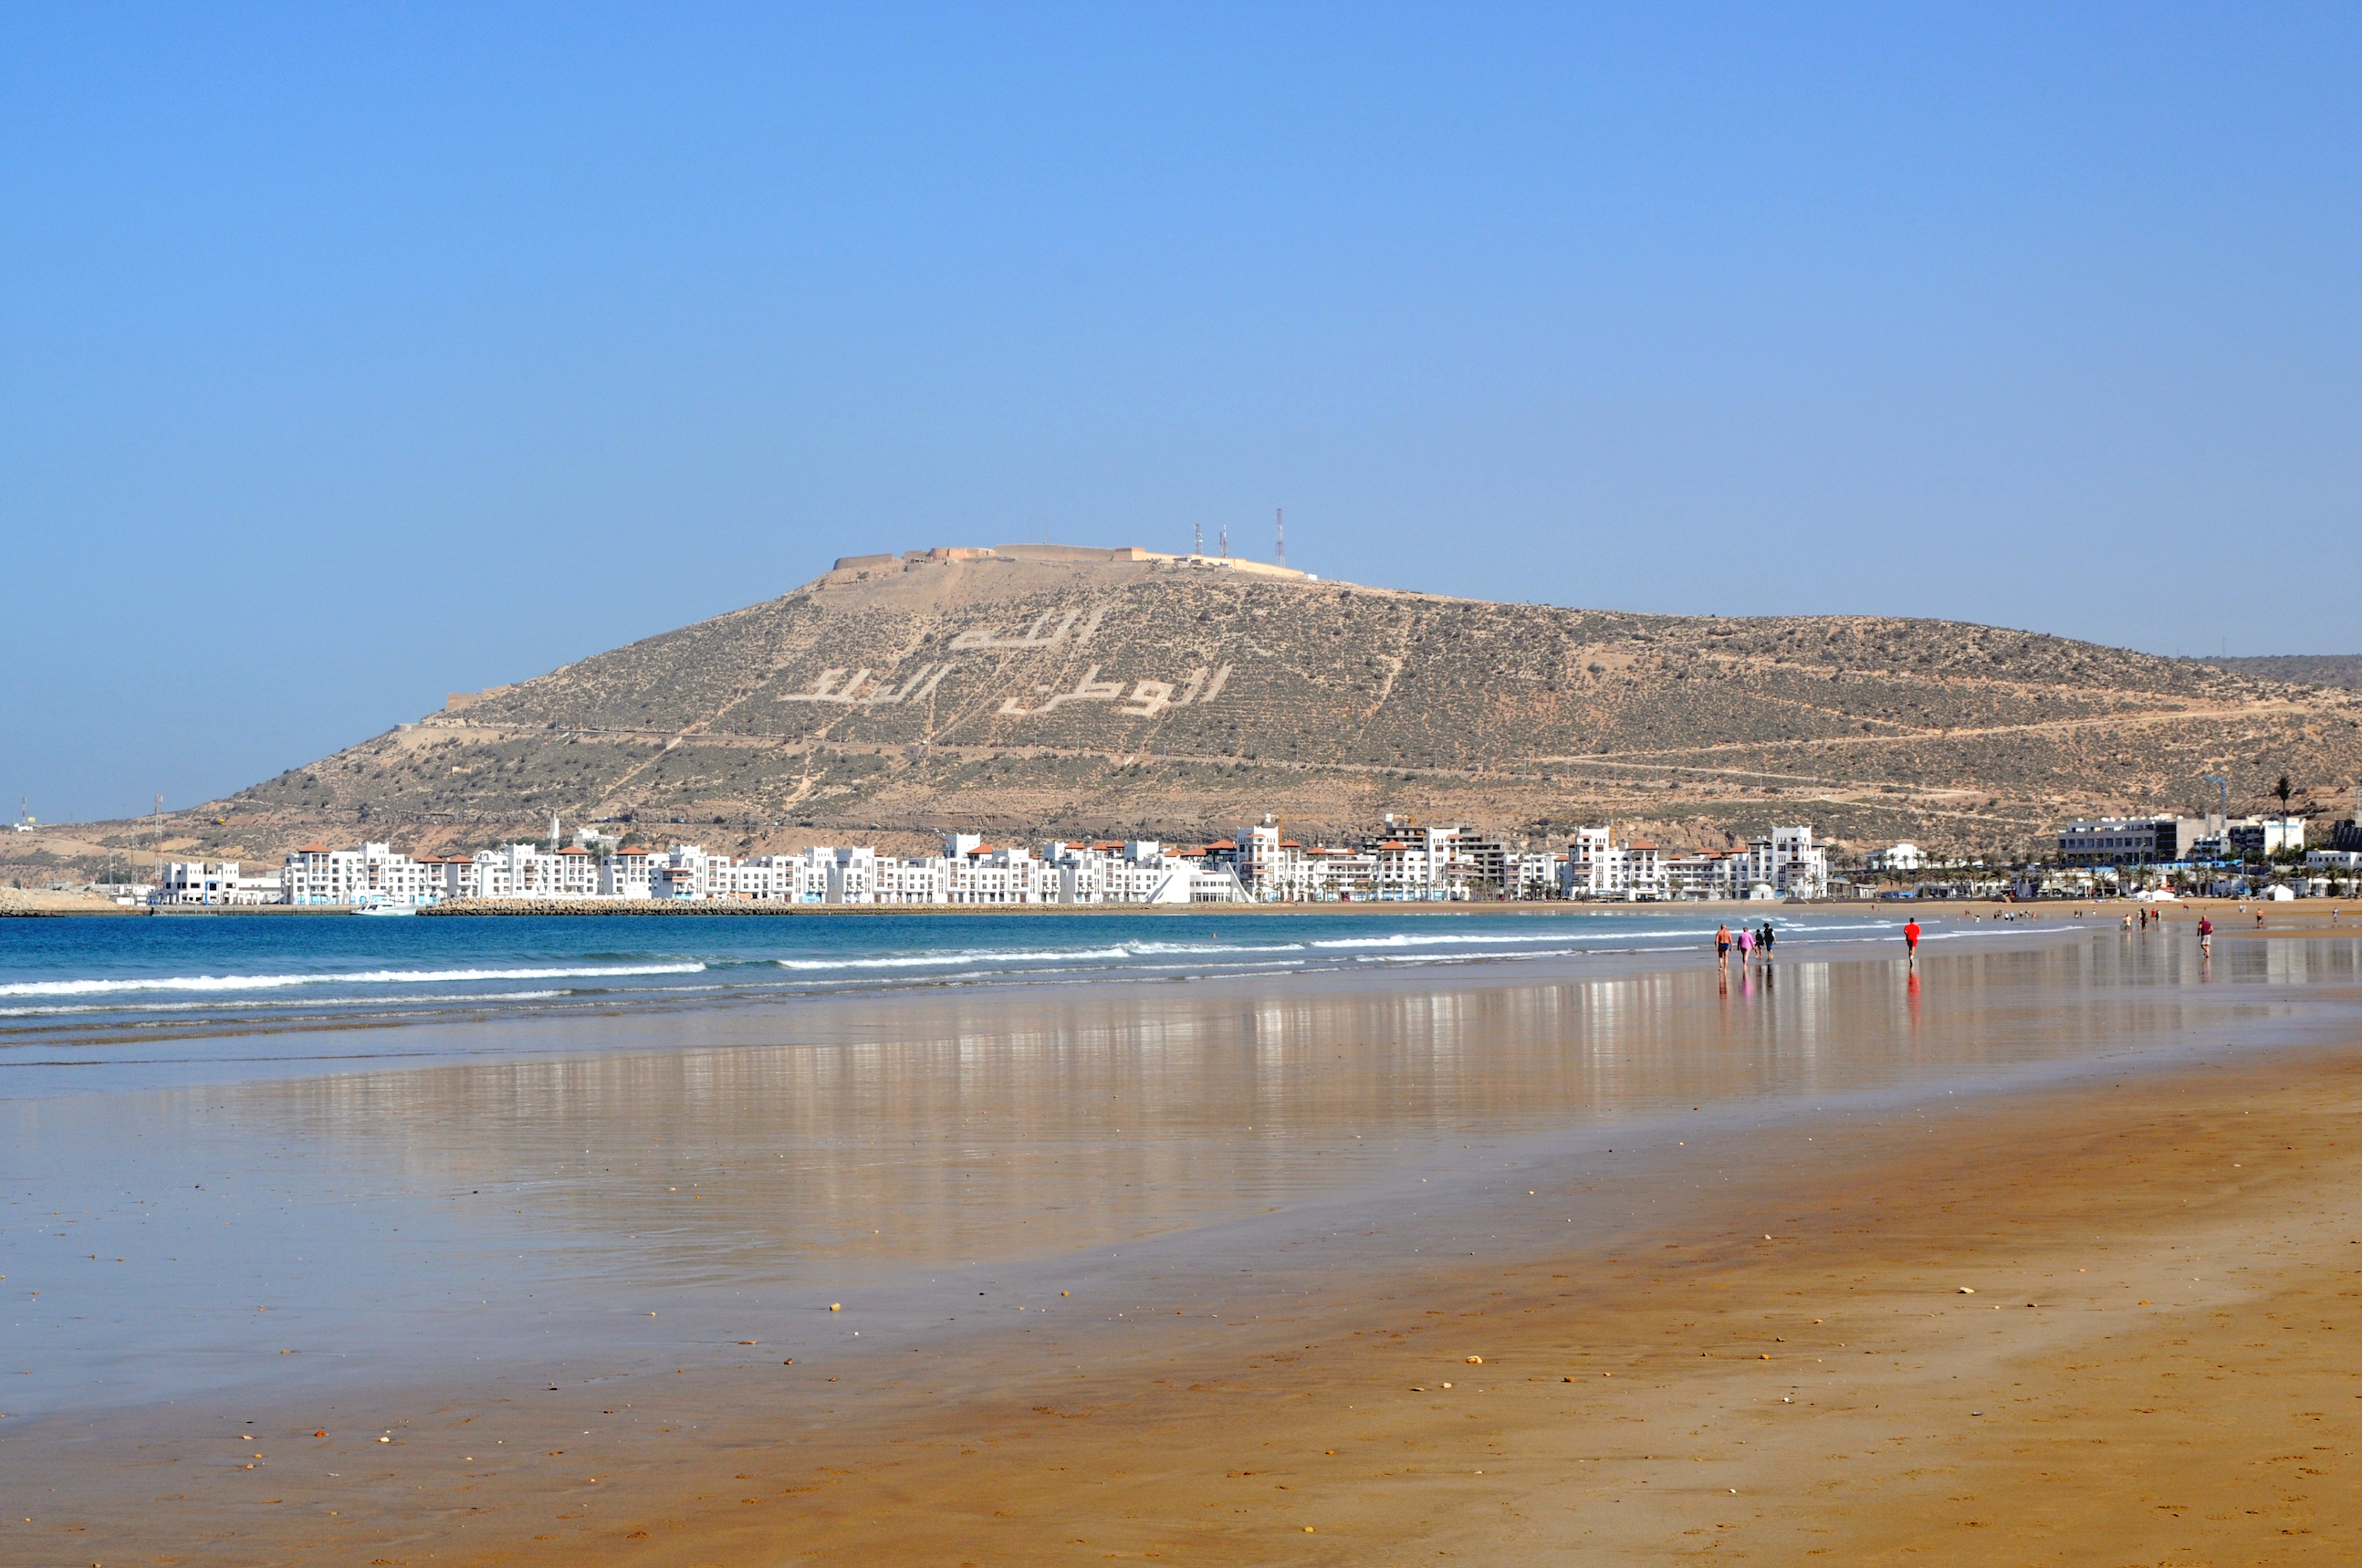 Agadir/tourisme : les grands hôtels ferment leurs portes: une capacité de 1200 lits